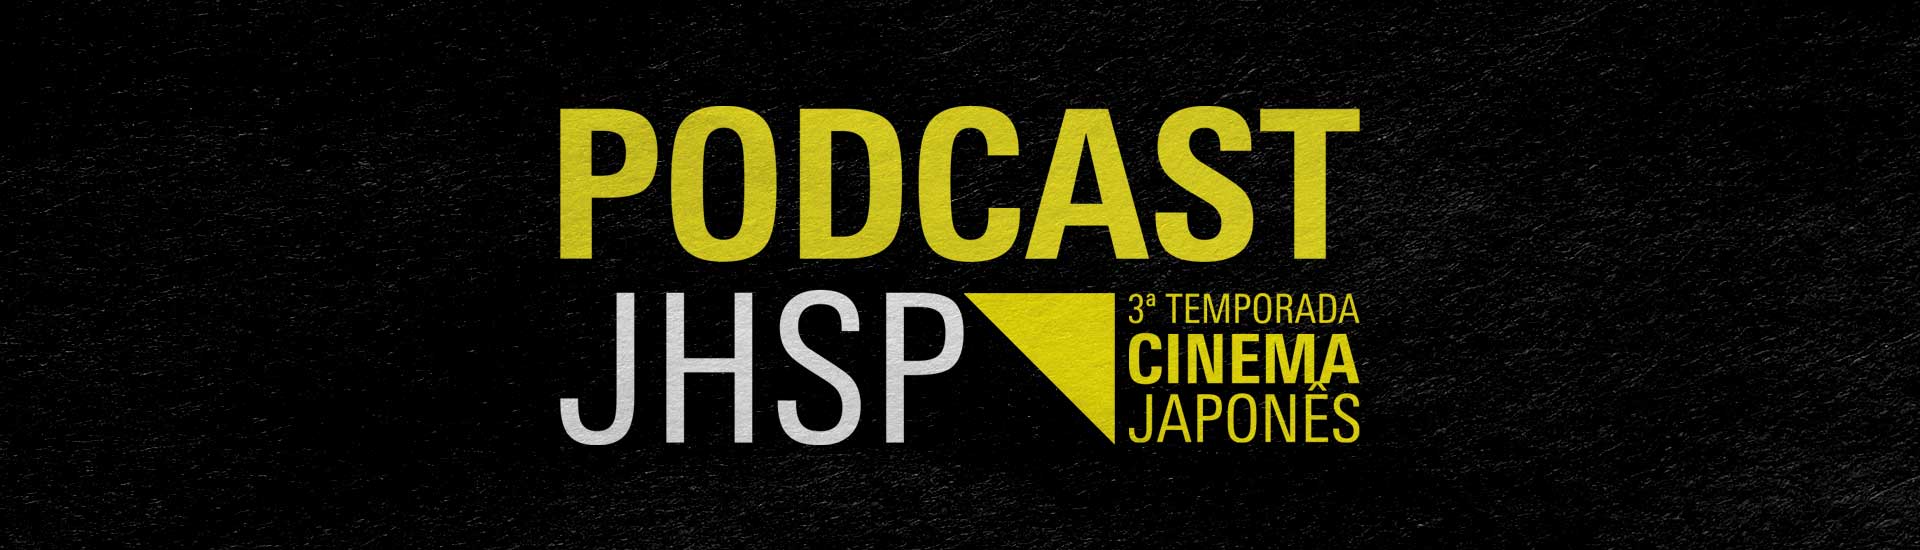 Podcast JHSP. 3ª temporada. Cinema Japonês